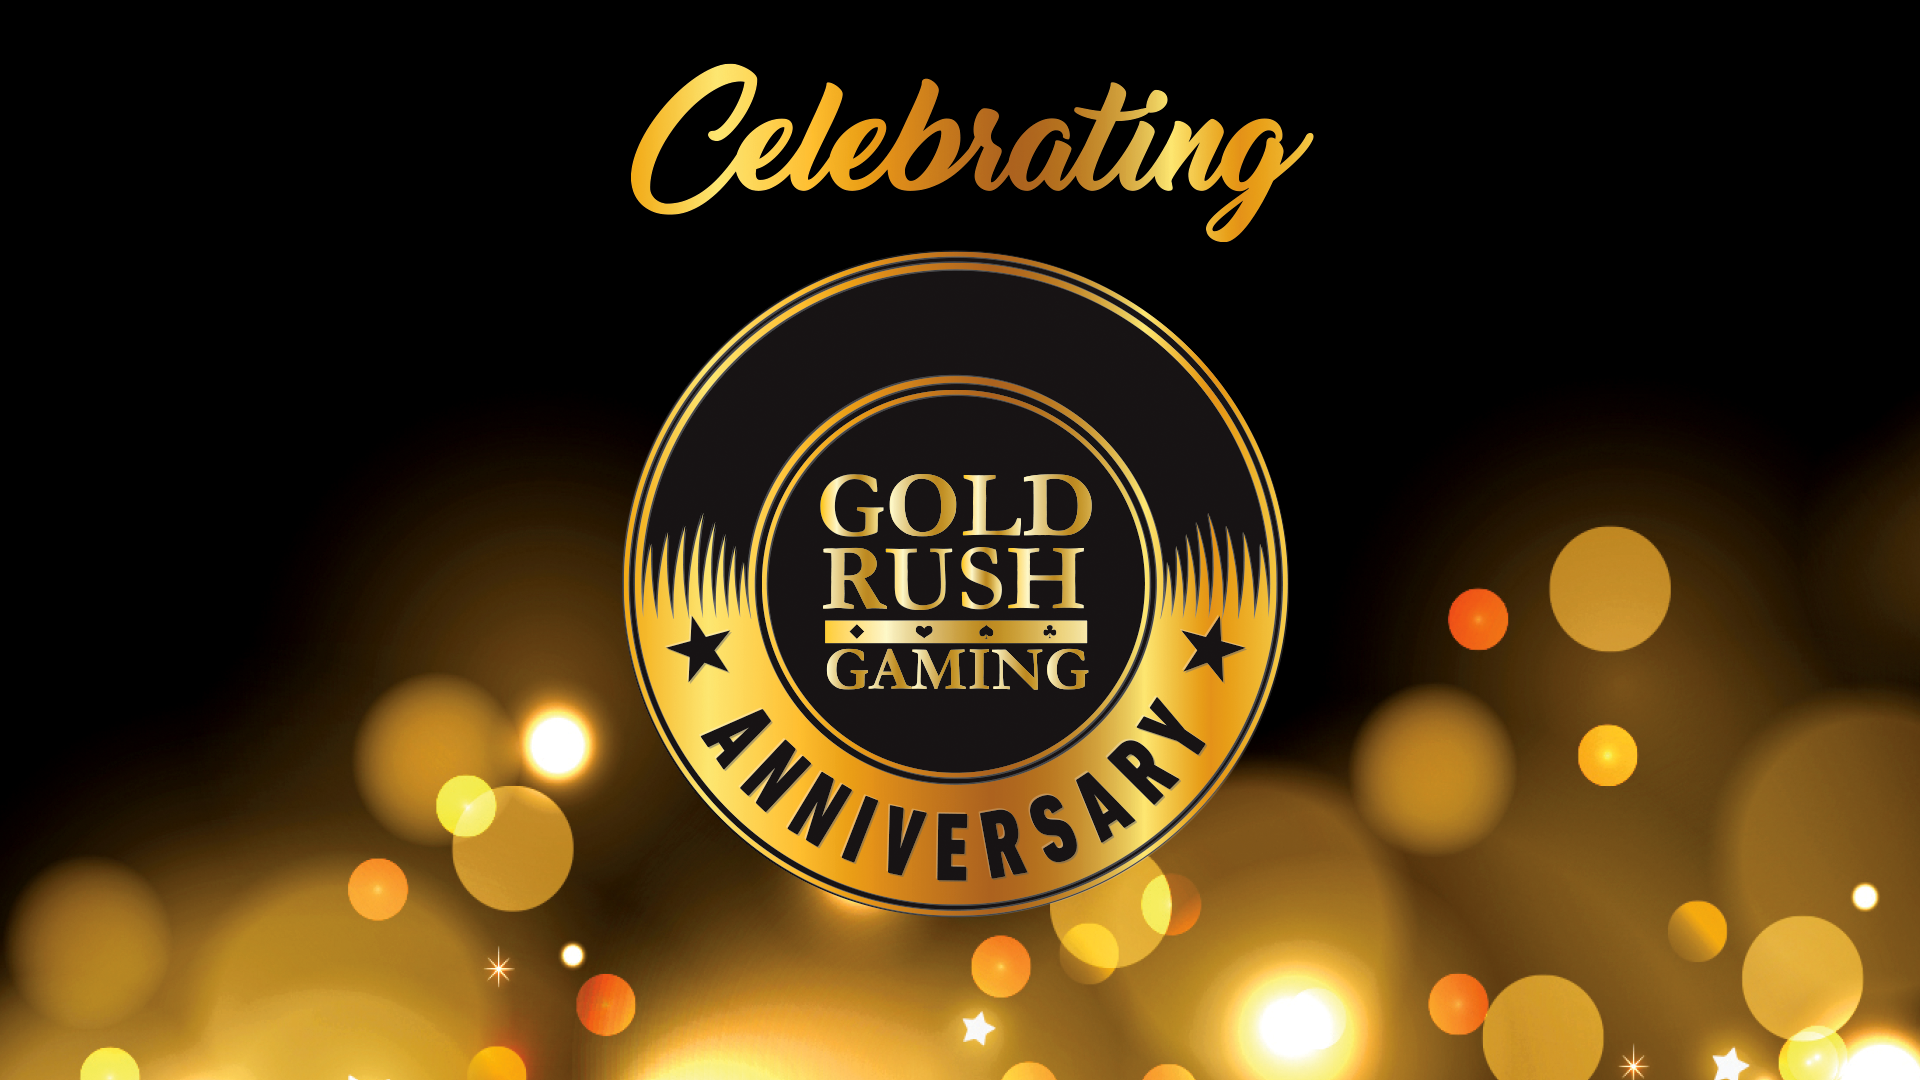 Gold Rush Gaming - Anniversary